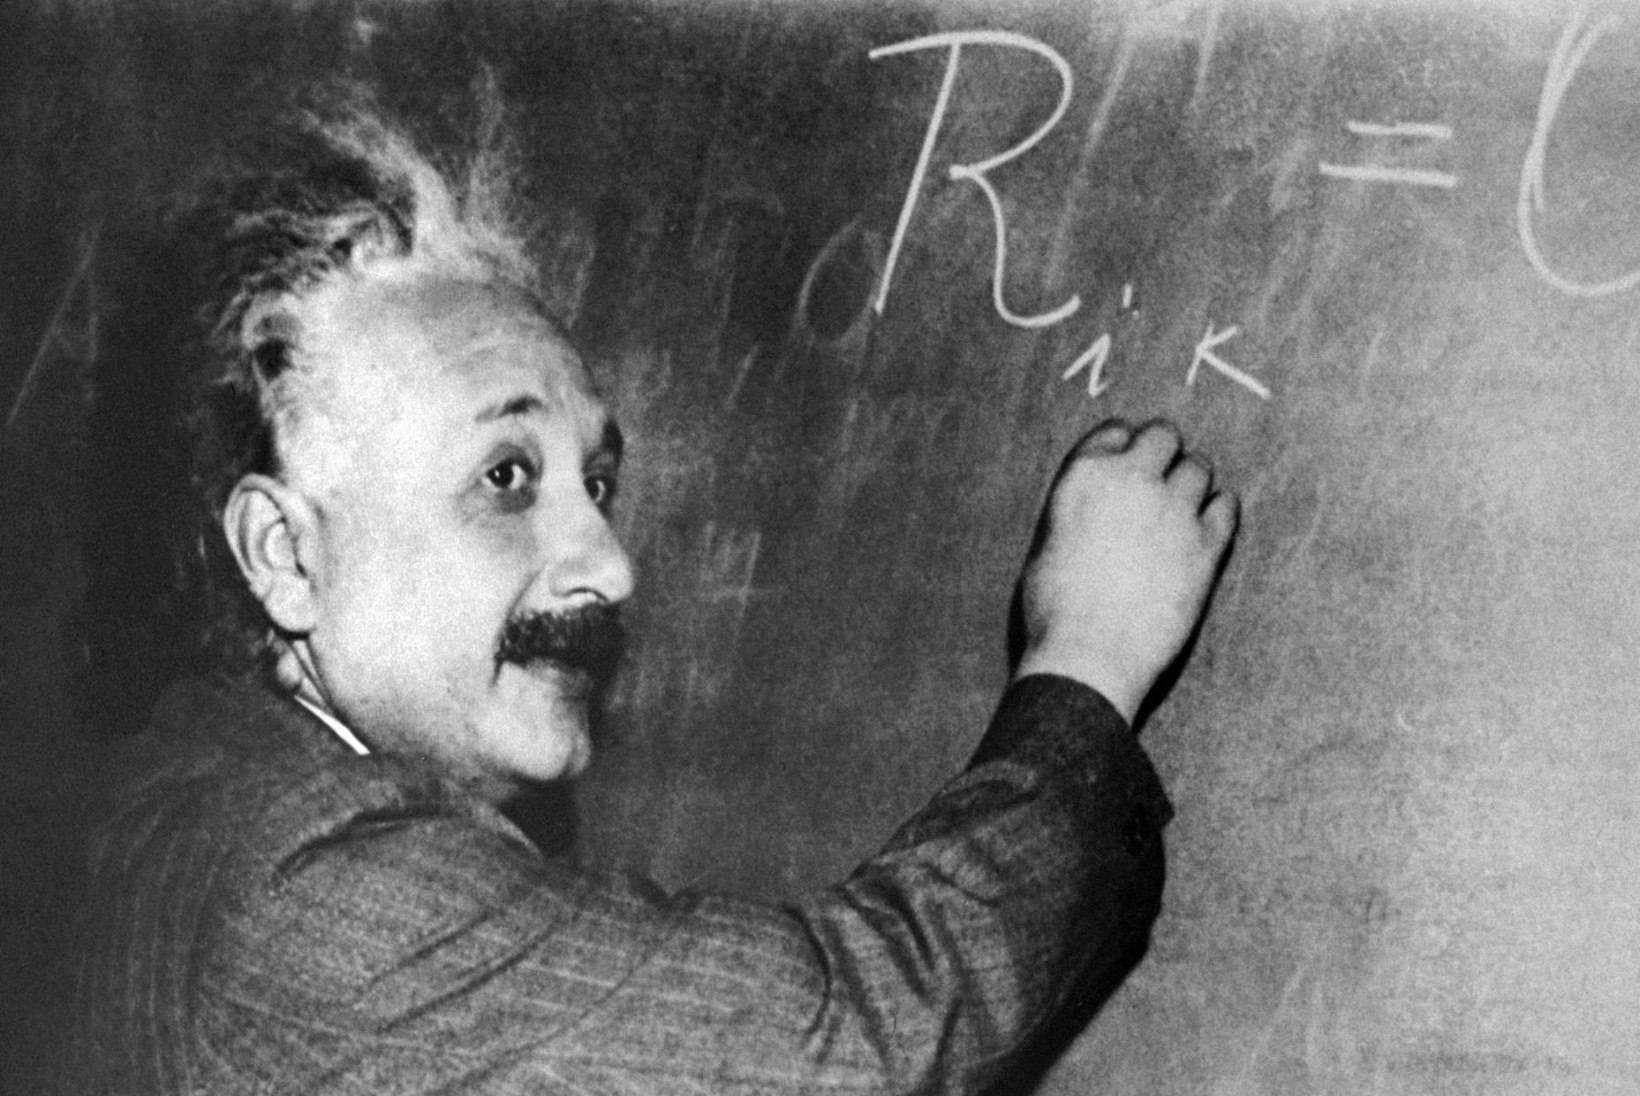 Einsteini kuulsa mõistatuse suudab lahendada vaid 2% inimestest. Vaata, kas sina kuulud nende hulka